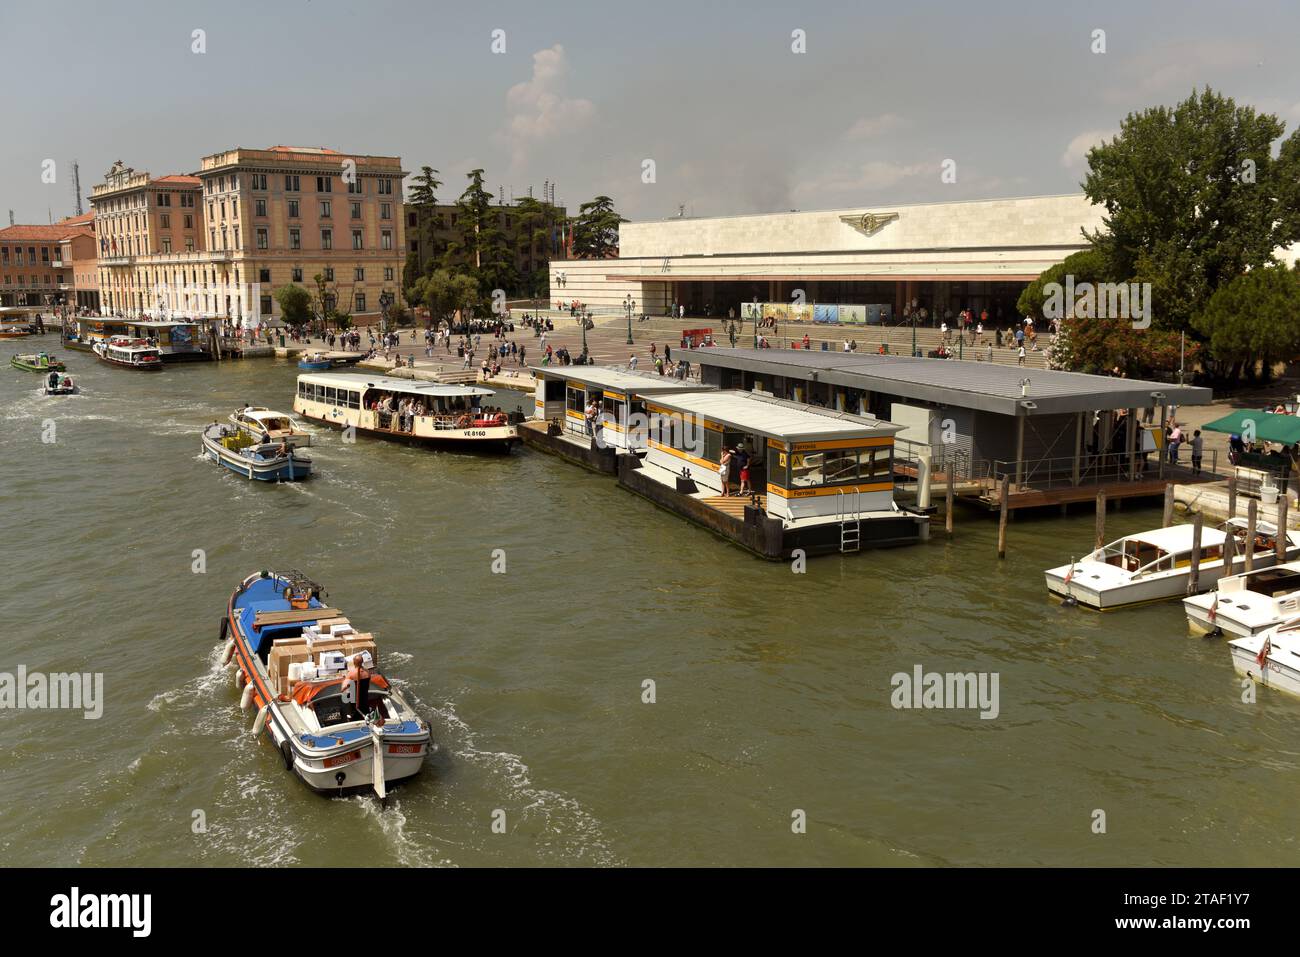 Venise, Italie - 08 juin 2017 : bateau-bus vénitien ou vaporetto près de la gare Santa Lucia (Stazione di Venezia Santa Lucia) à Venise. Banque D'Images